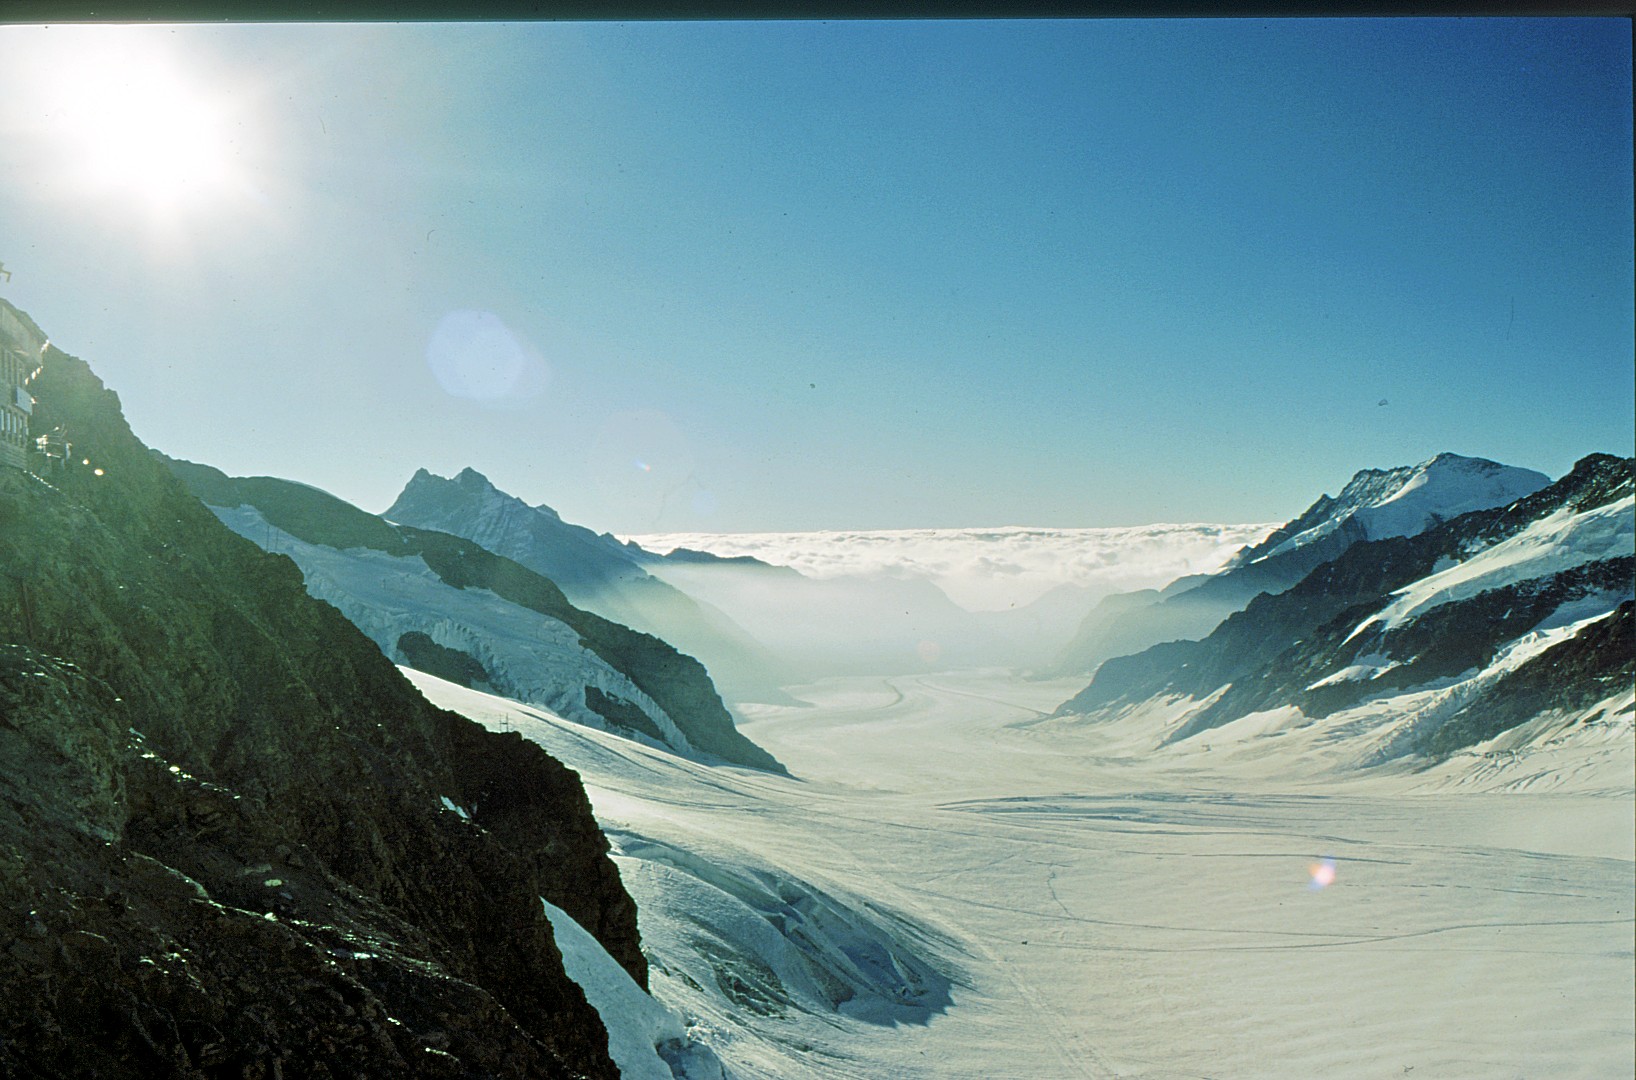 Schweiz: Blick vom Jungfraujoch, 3800m üNN, auf den Großen Aletschgletscher